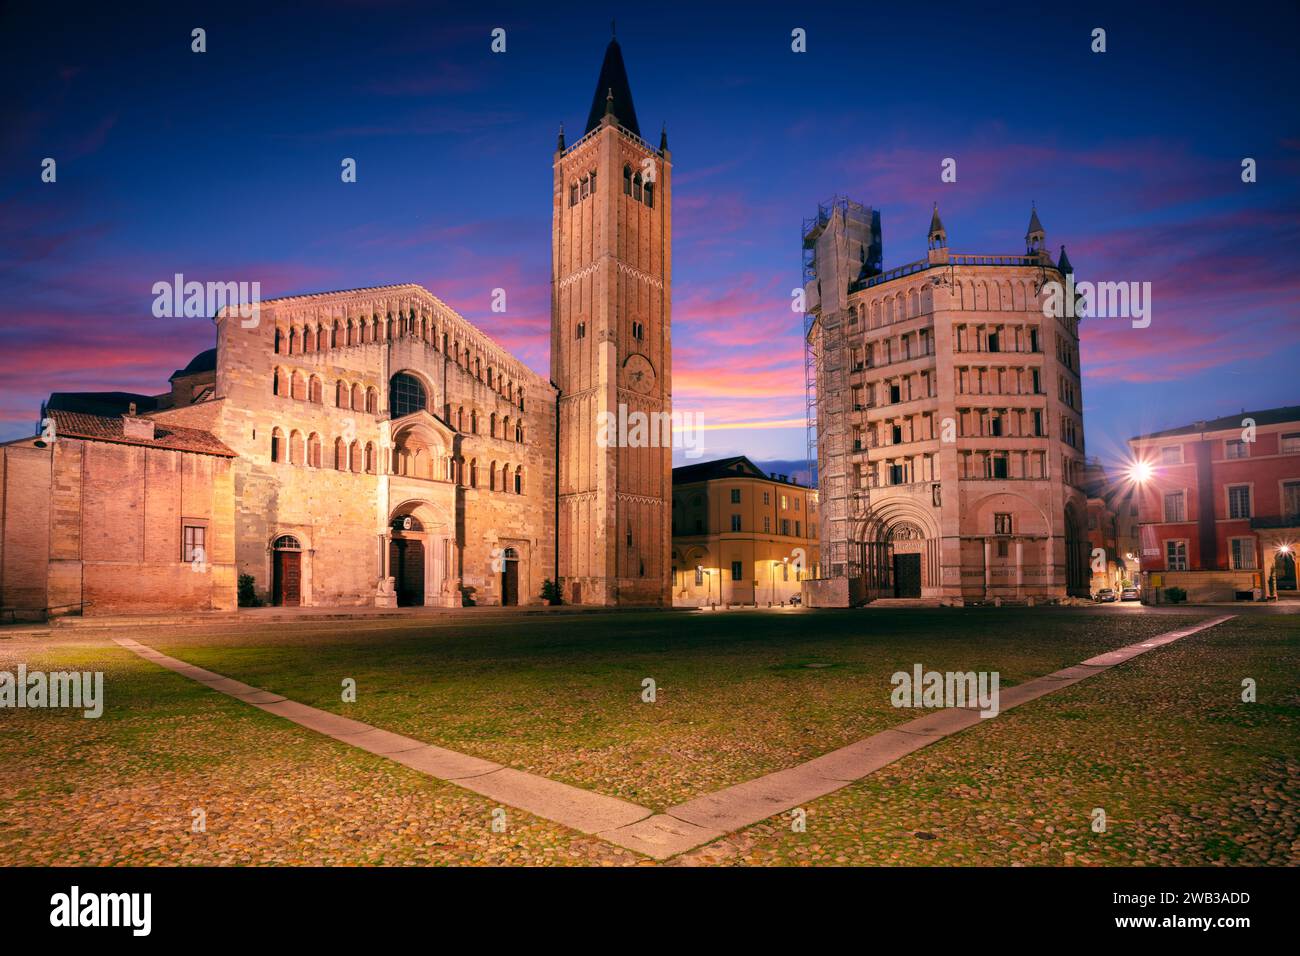 Parme, Italie. Image de paysage urbain de la vieille ville de Parme, Italie au beau lever du soleil d'automne. Banque D'Images